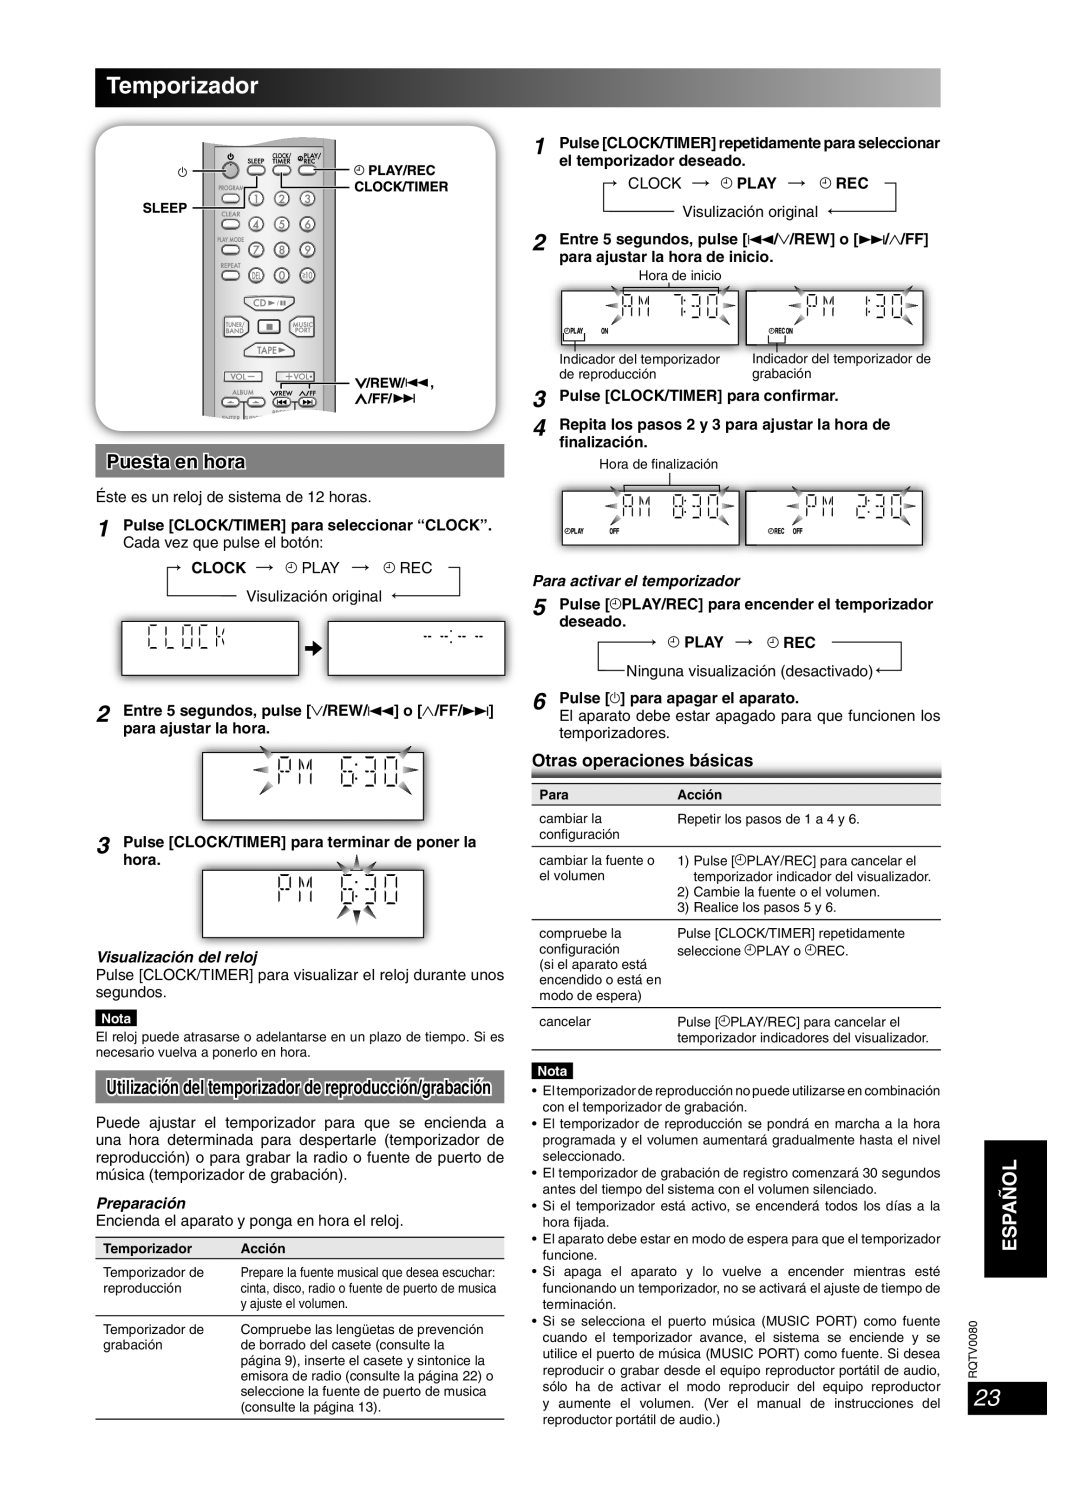 Panasonic RQTV0080-1P, SC-PM23 Temporizador, Puesta en hora, Visualización del reloj, Español, Otras operaciones básicas 